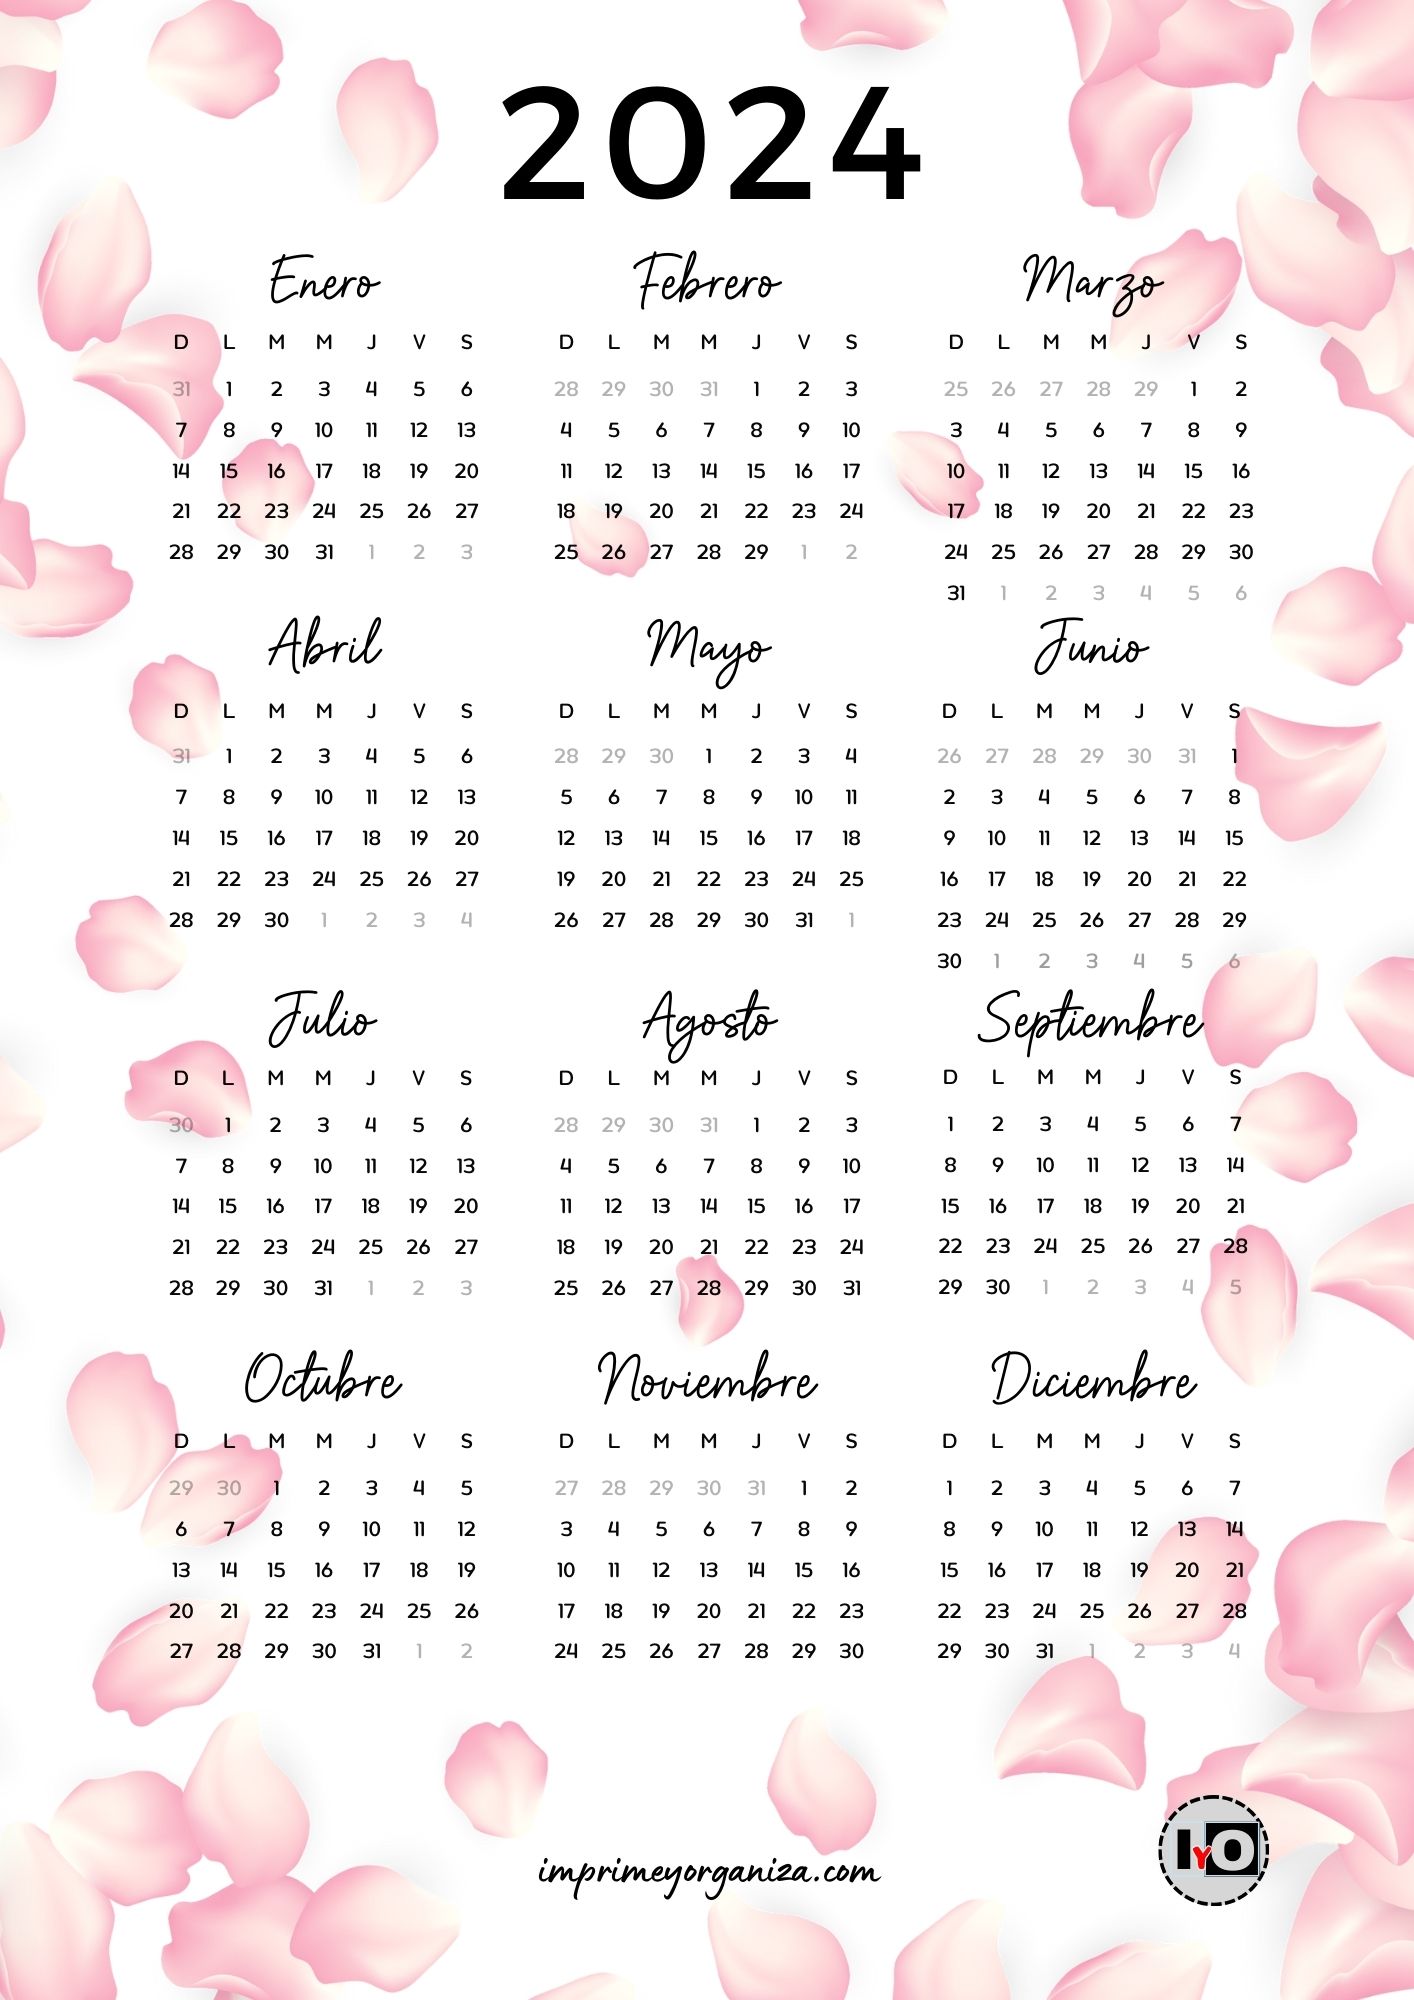 Calendarios Anuales 2024 - Imprime y Organiza